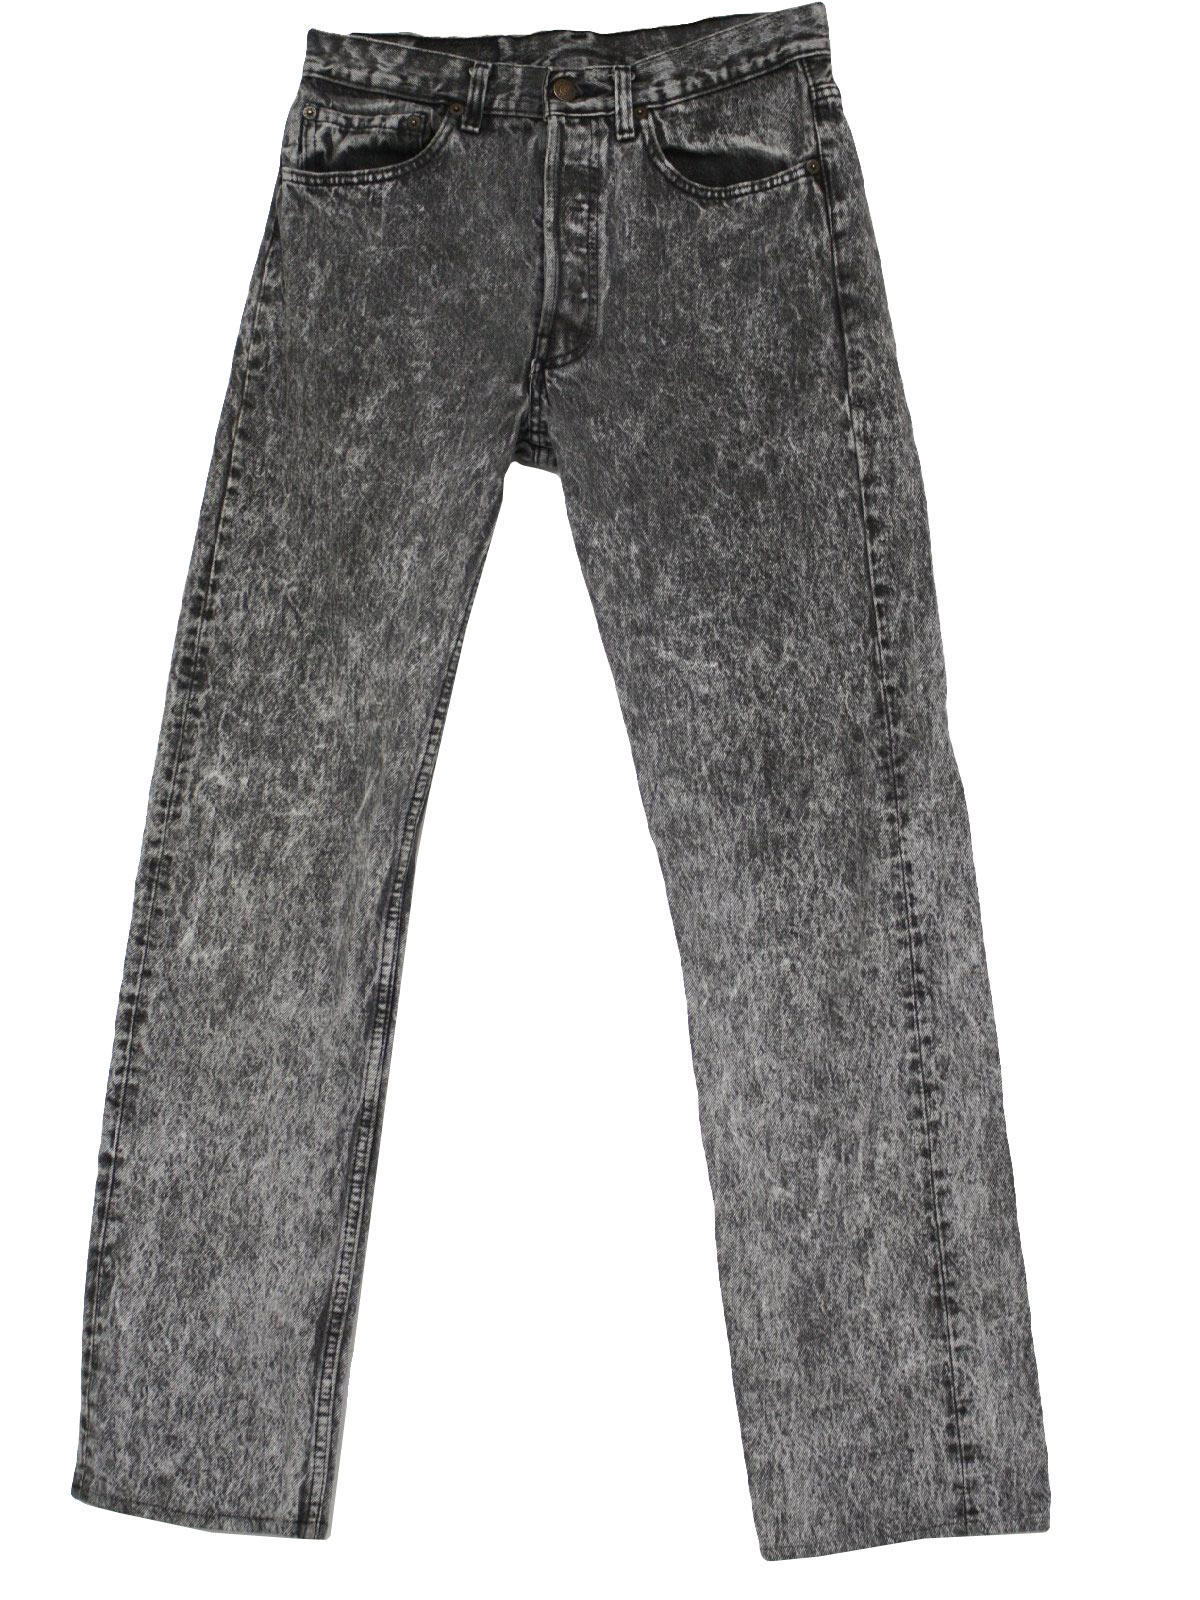 Retro 1980's Pants (Levis) : 80s -Levis- Mens grey acid wash cotton ...